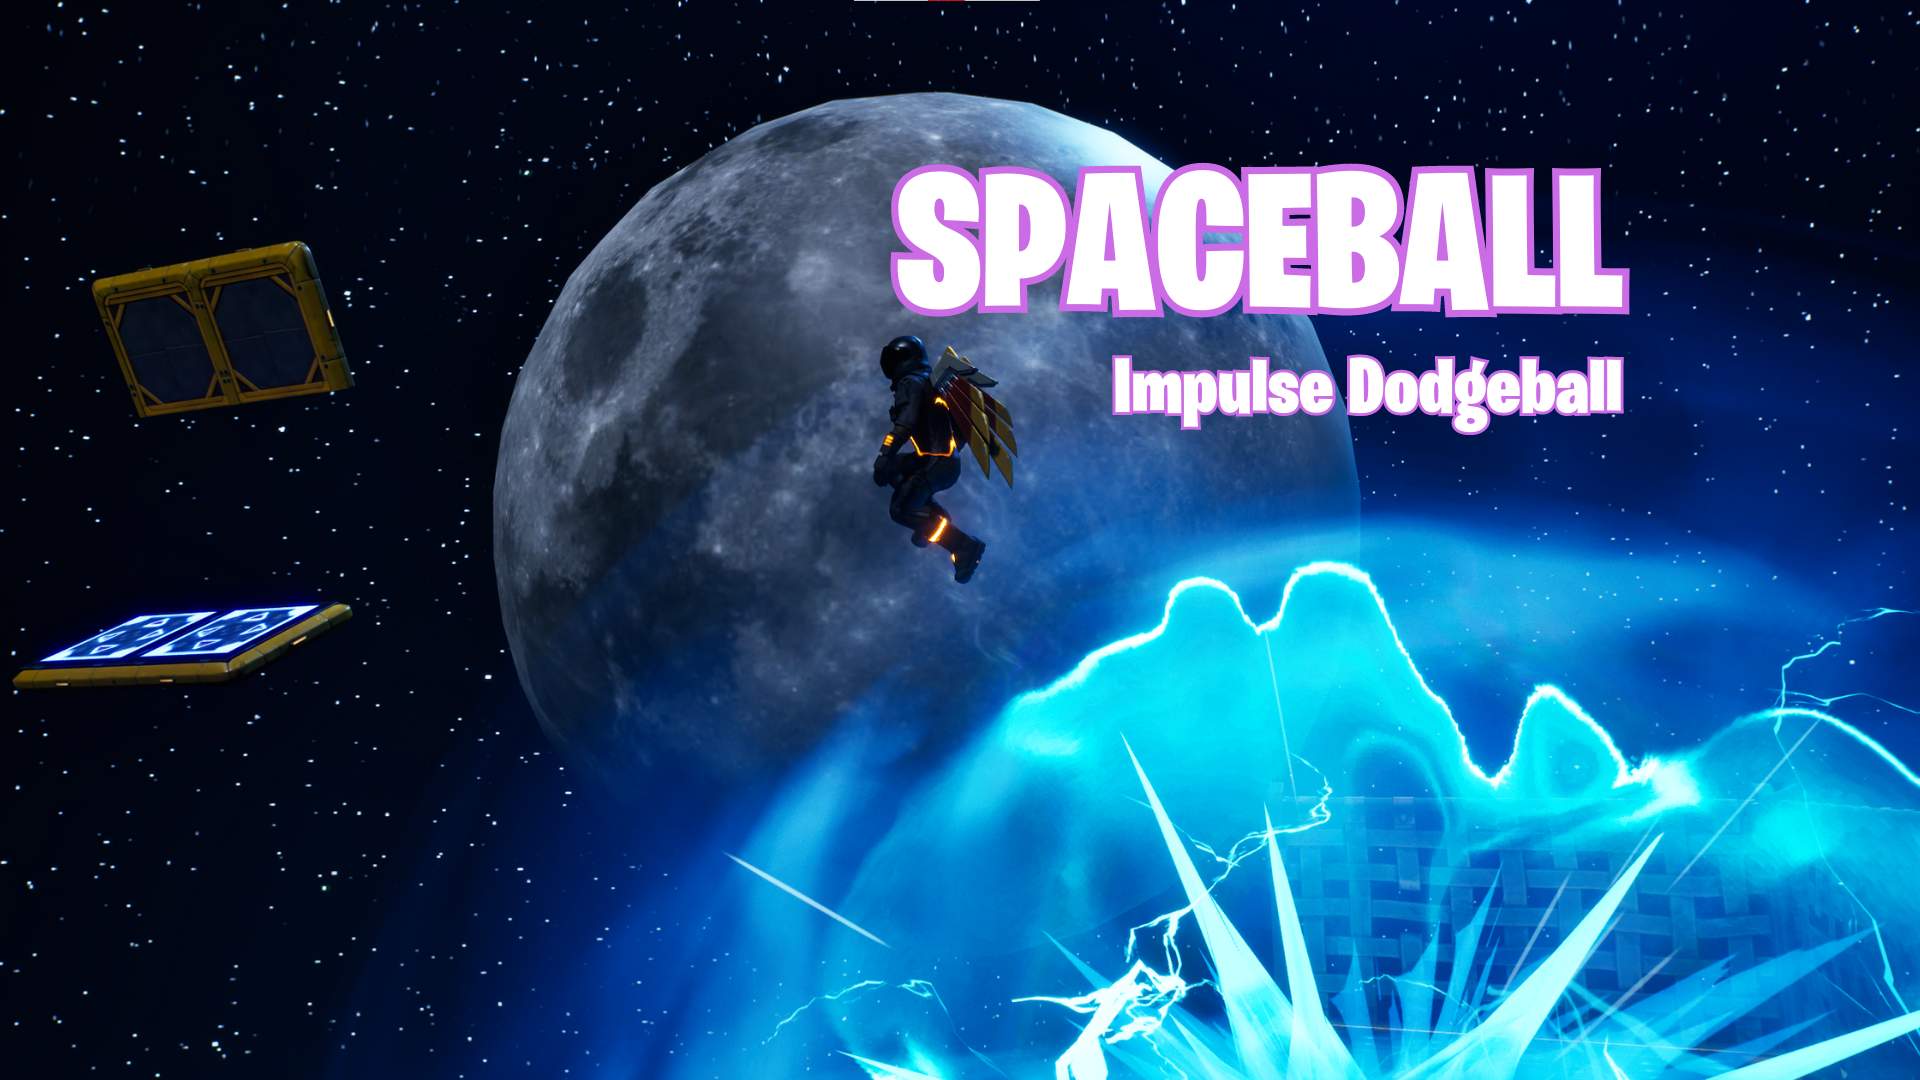 Spaceball - Impulse Dodgeball